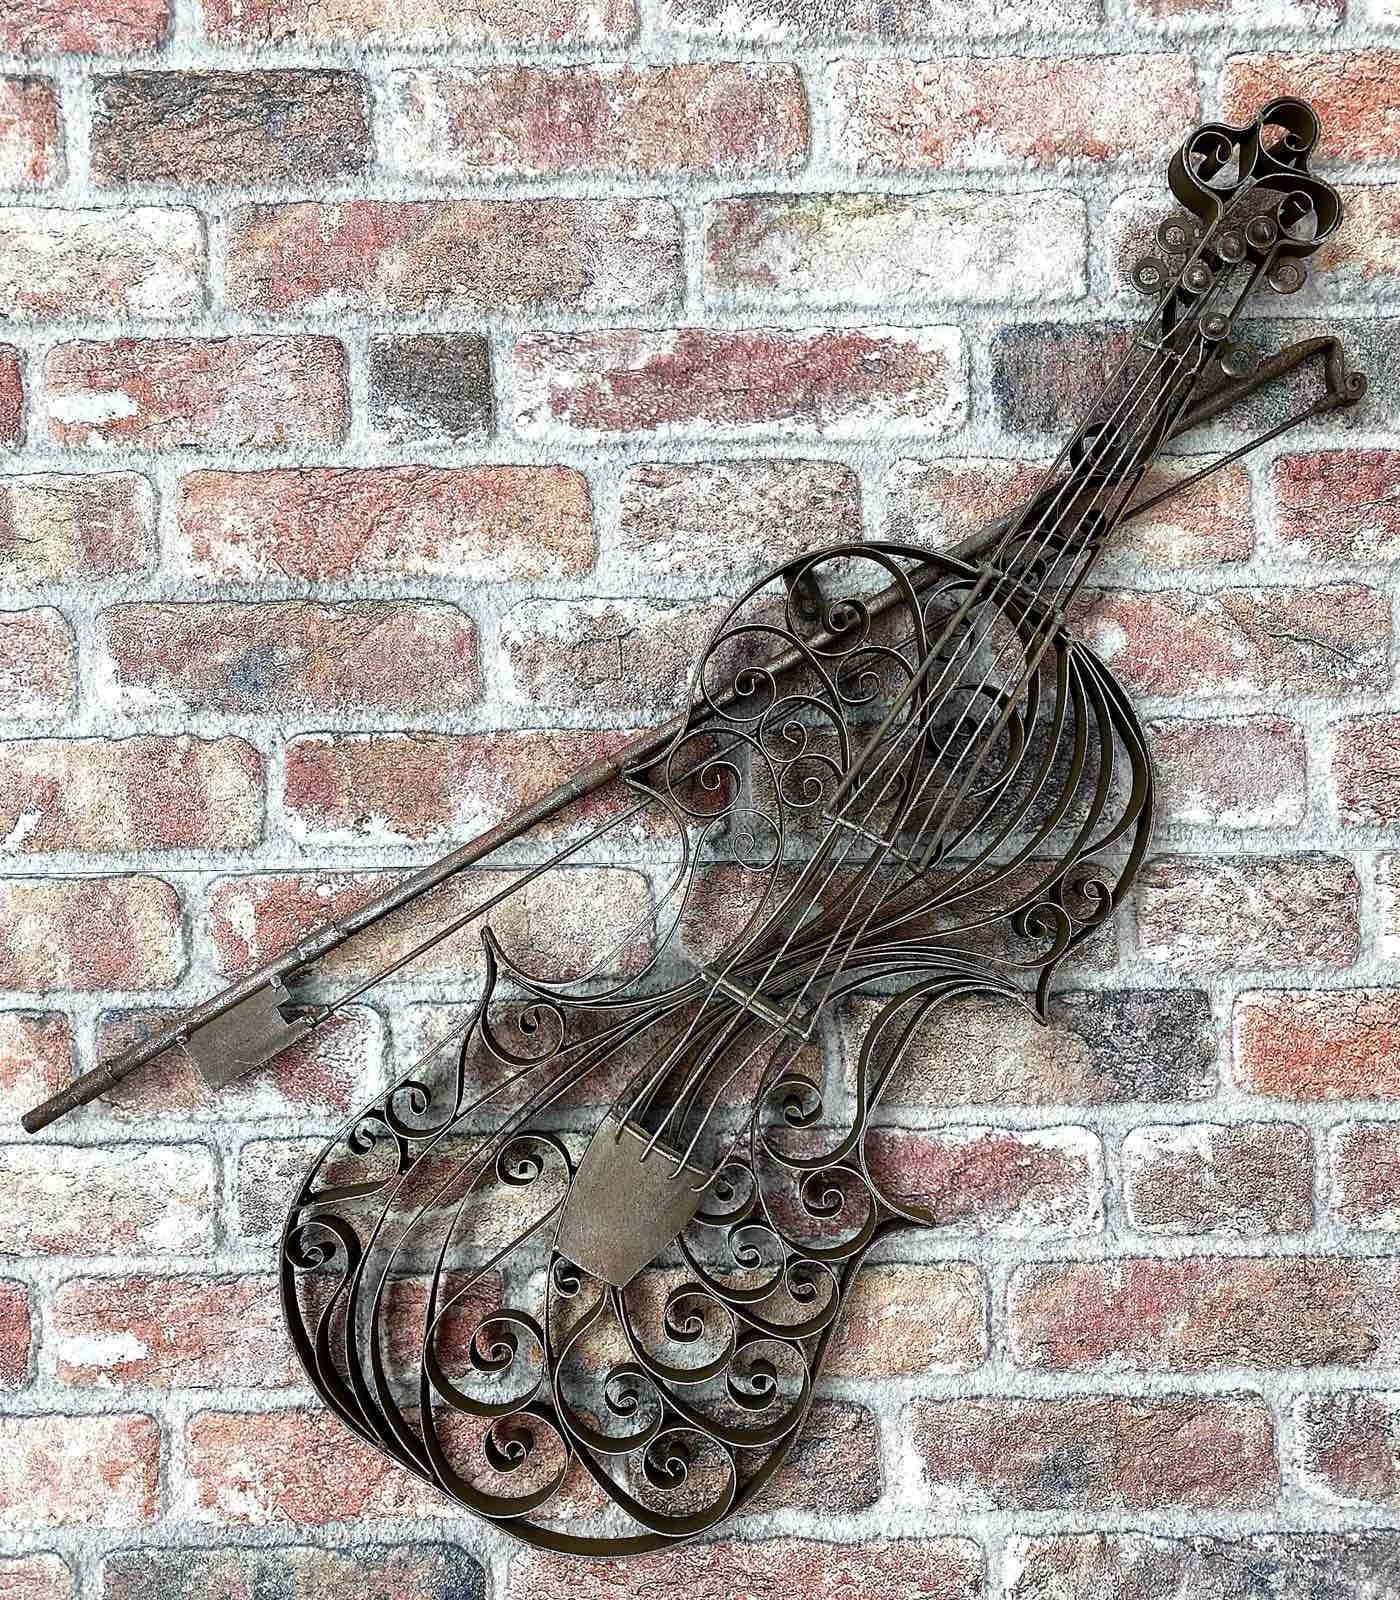 Wanddekoration Violine Dekoration Metall Gartenfigur Modell Aubaho Geige Instrument Garte